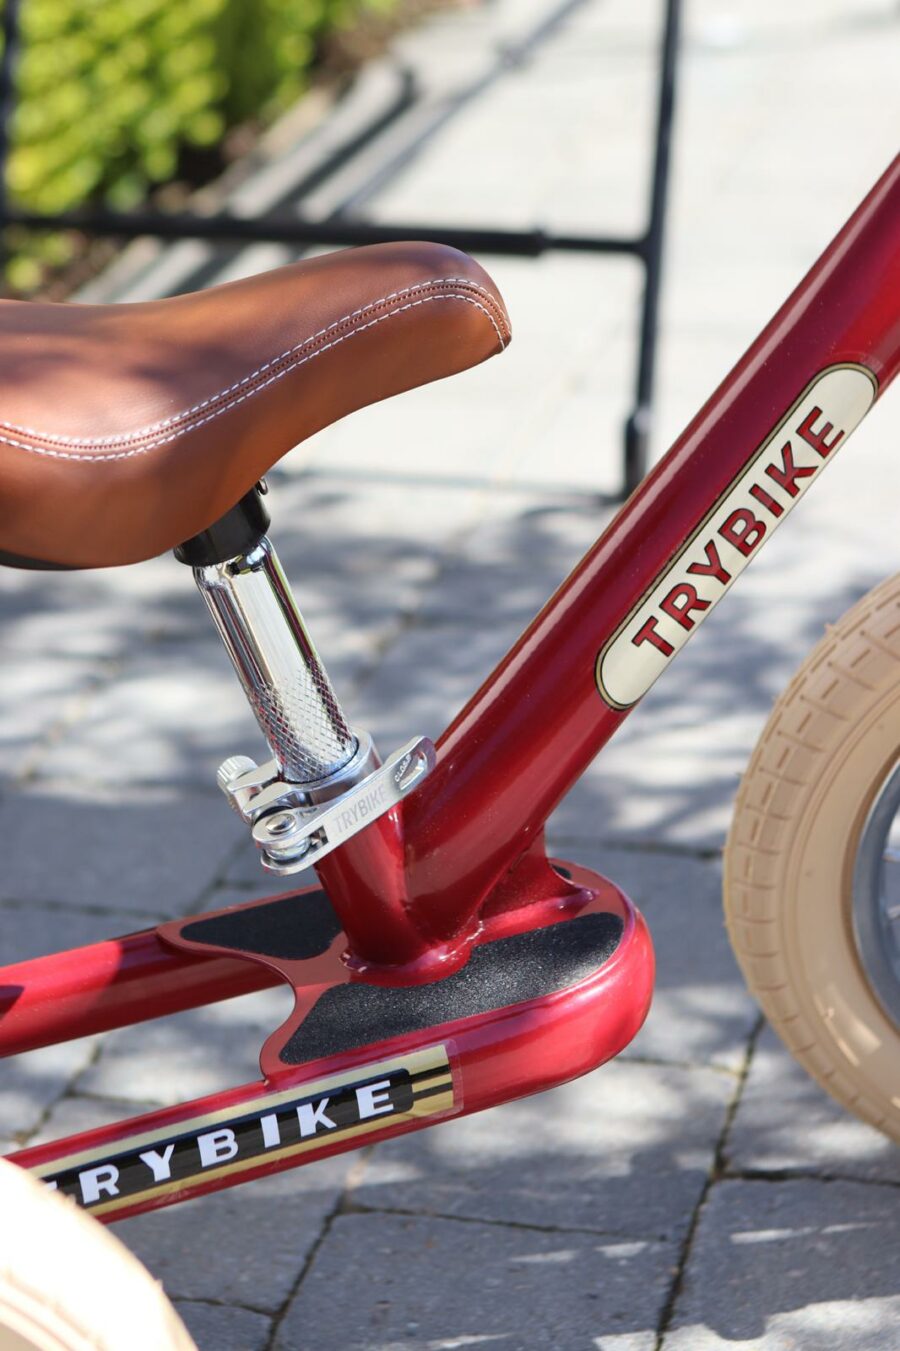 trybike steel balance trike vintage red